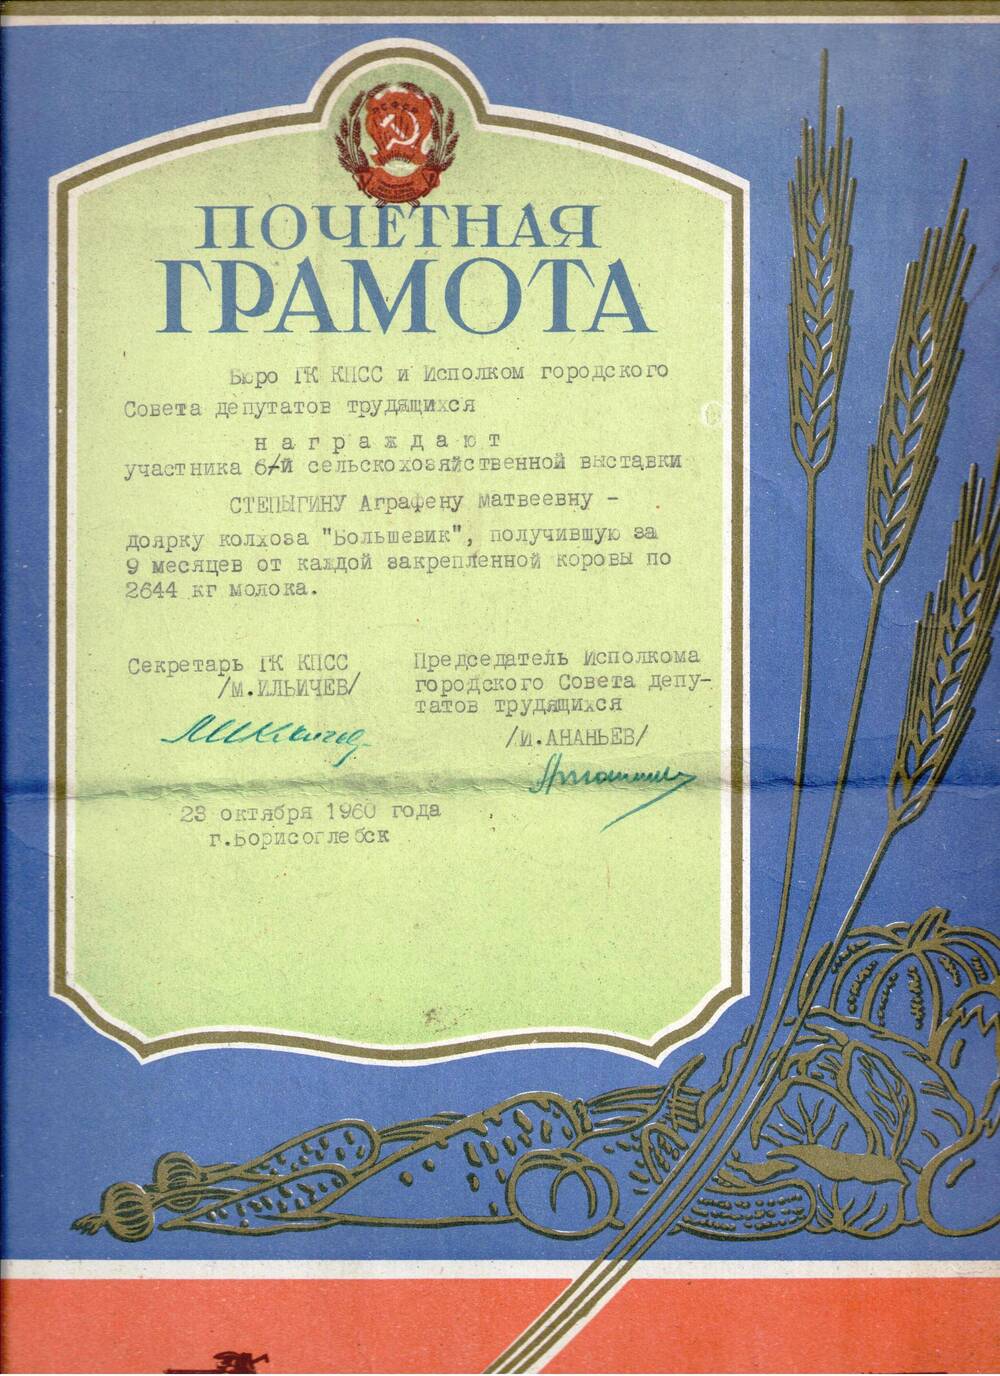 Почетная грамота Степыгиной Аграфены Матвеевны -доярки колхоза Большевик , получившей за 9 месяцев от каждой закрепленной коровы по 2644 кг молока.